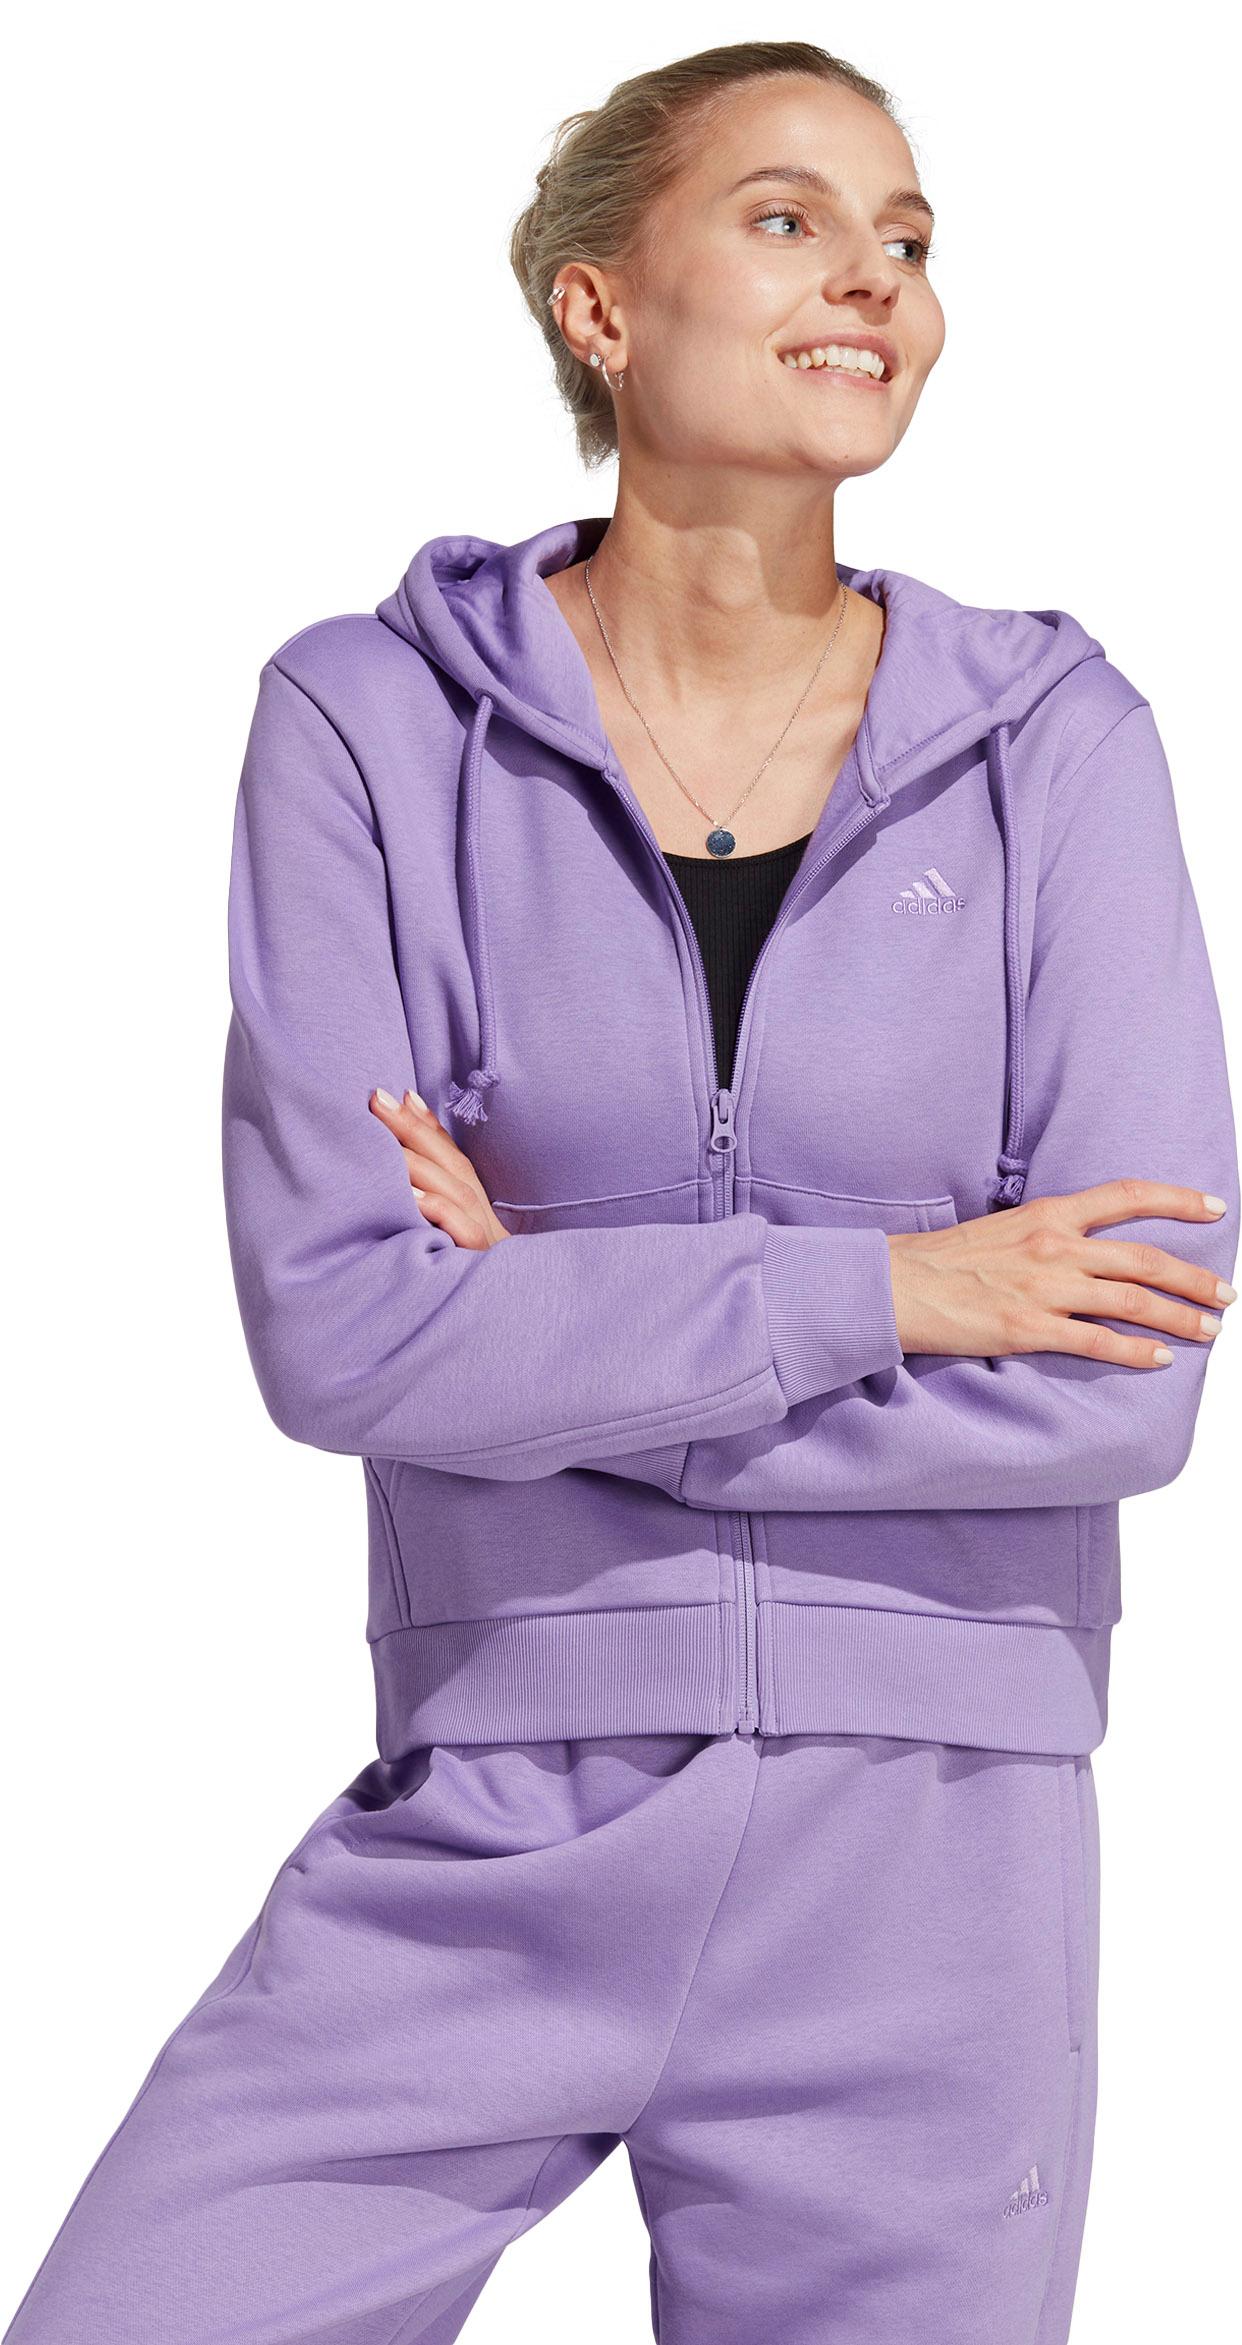 Adidas Szn violet Sweatjacke von Shop Damen Online im kaufen All fusion SportScheck